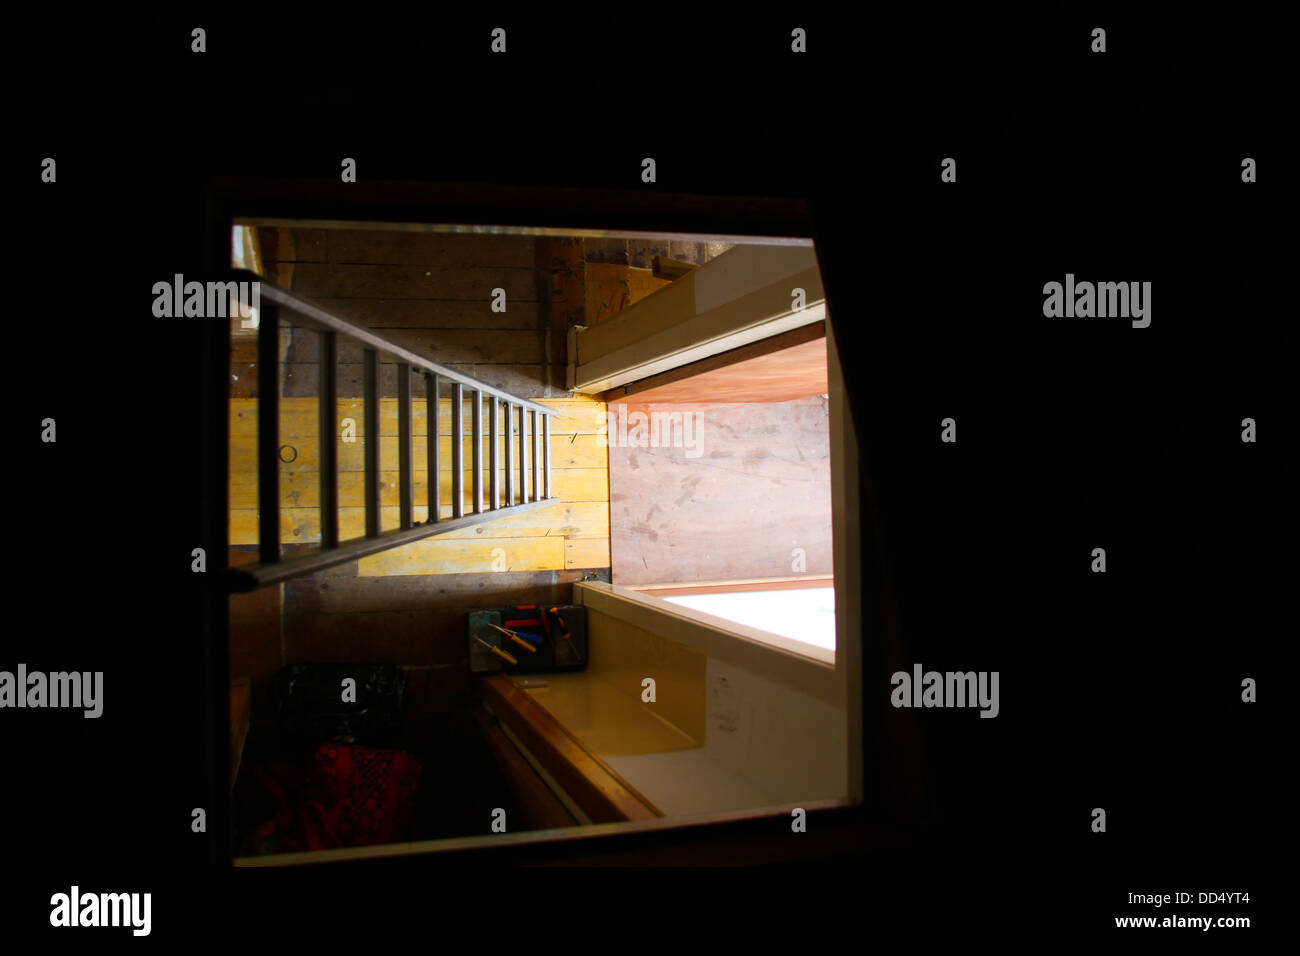 Dachboden luke -Fotos und -Bildmaterial in hoher Auflösung – Alamy